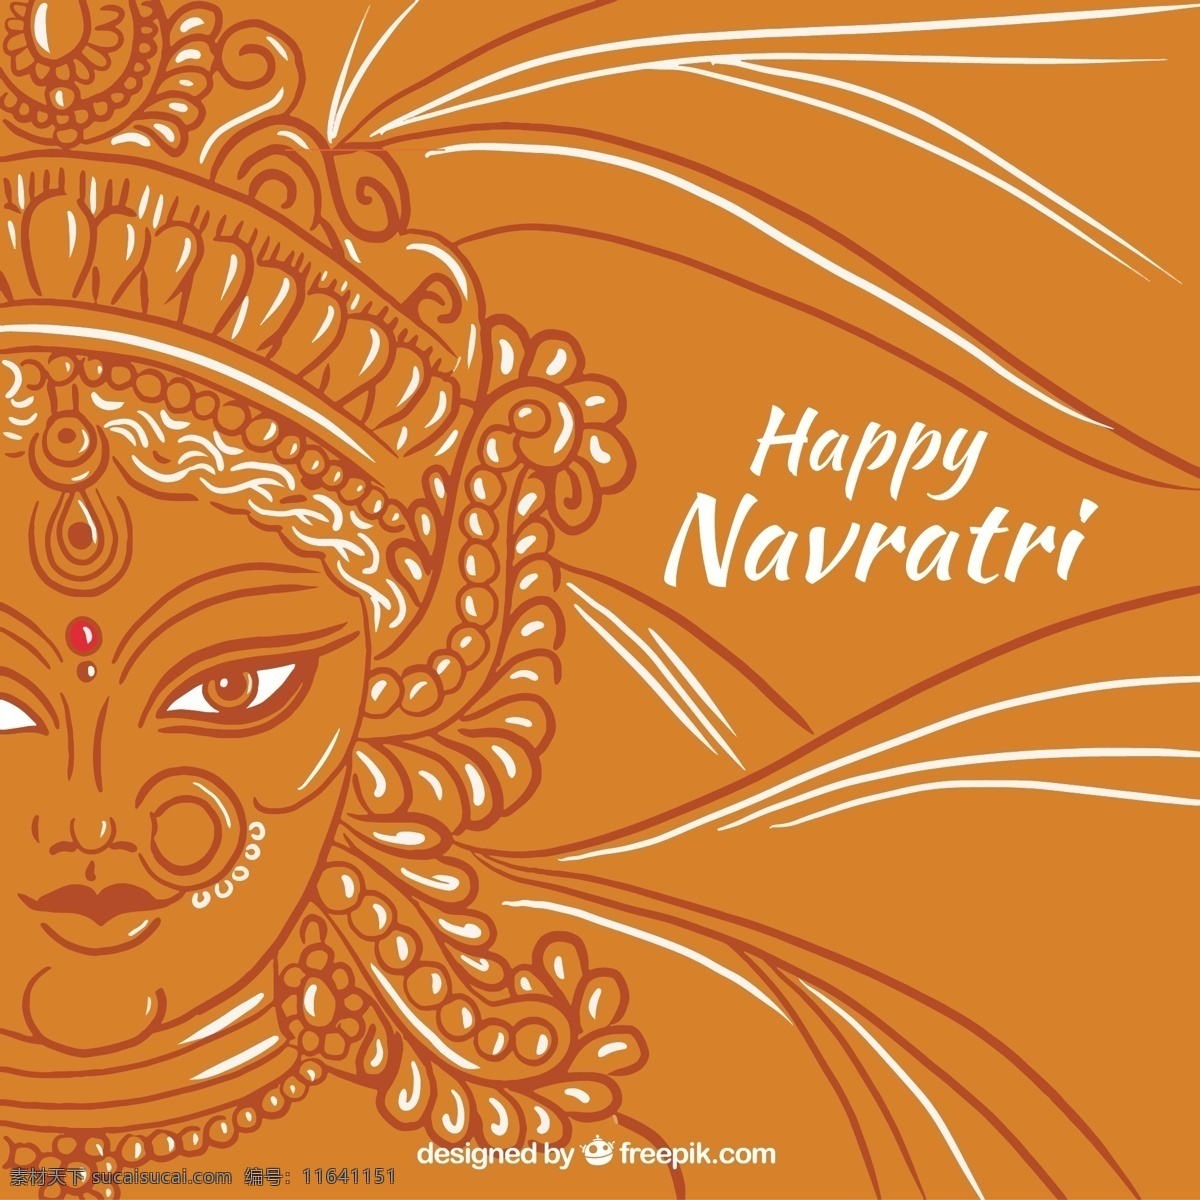 快乐 navratri 背景 杜 迦 脸 的背景下 一方面 手绘 高兴 庆祝 宗教 节日 印度 绘图 文化 传统 得出 印度教 精神 喜庆 素描 写生